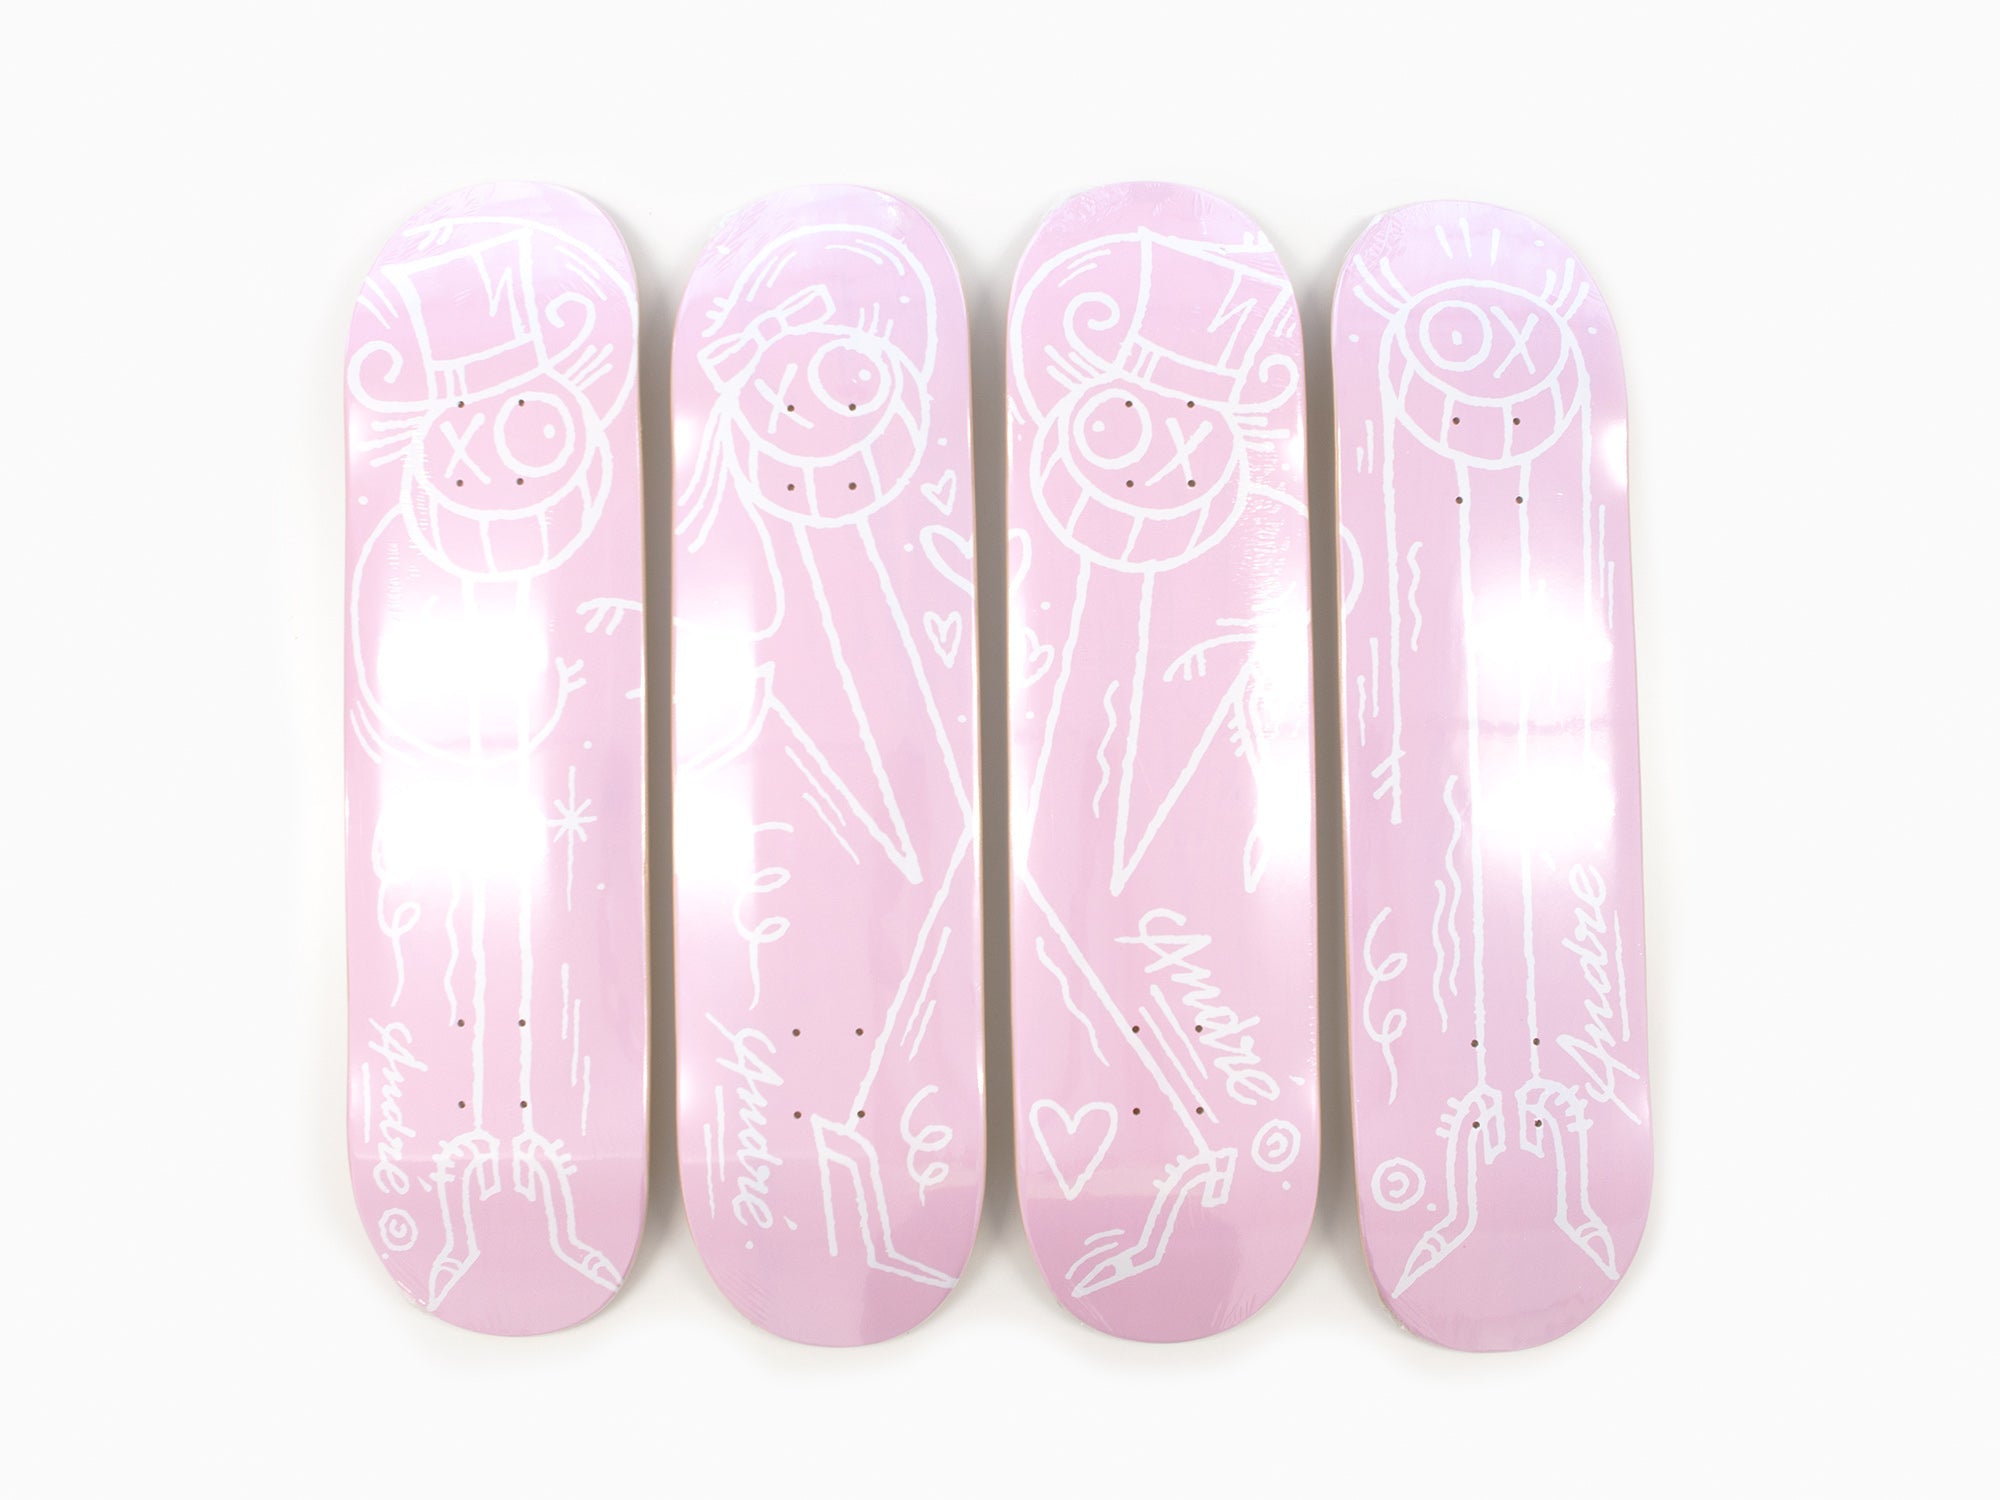 André - Skateboards - Ensemble de 4 planches à roulettes "La vie en rose".